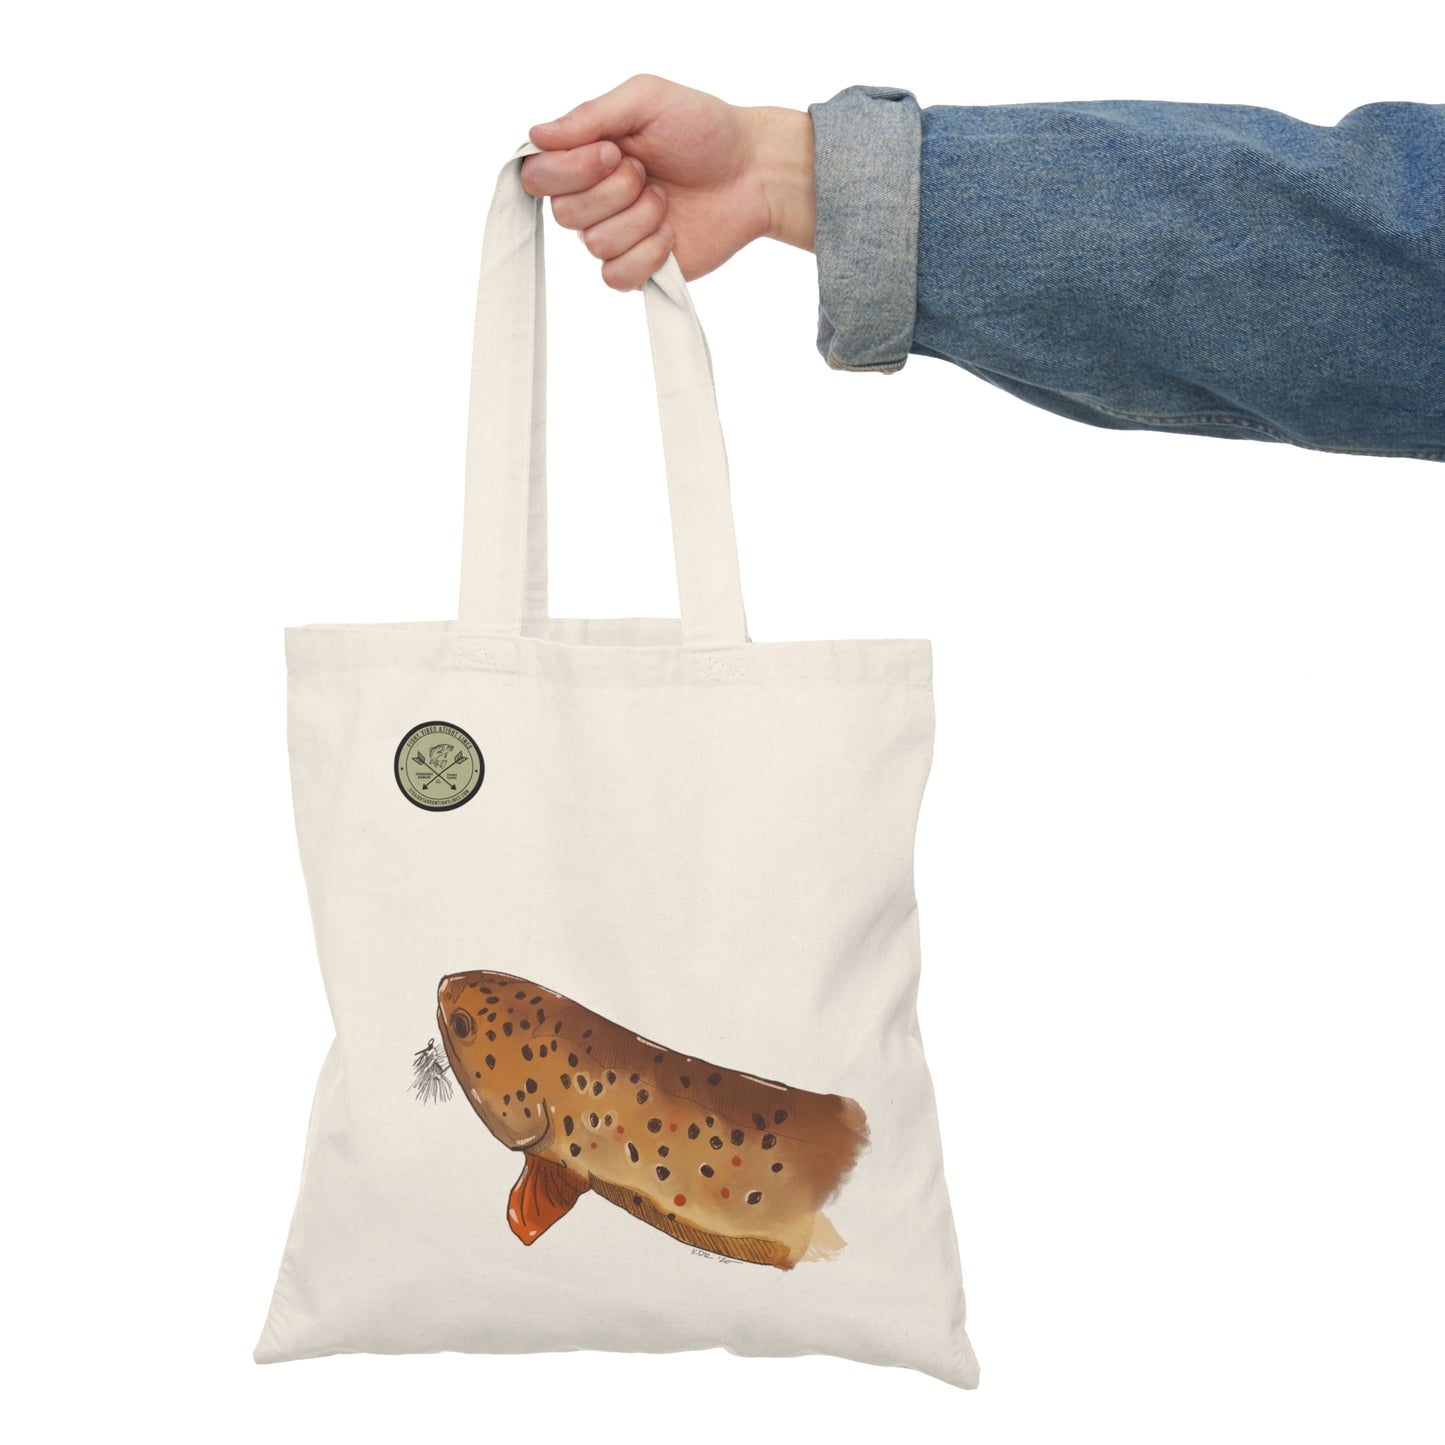 Brown trout, Natural Tote Bag, grocery bag